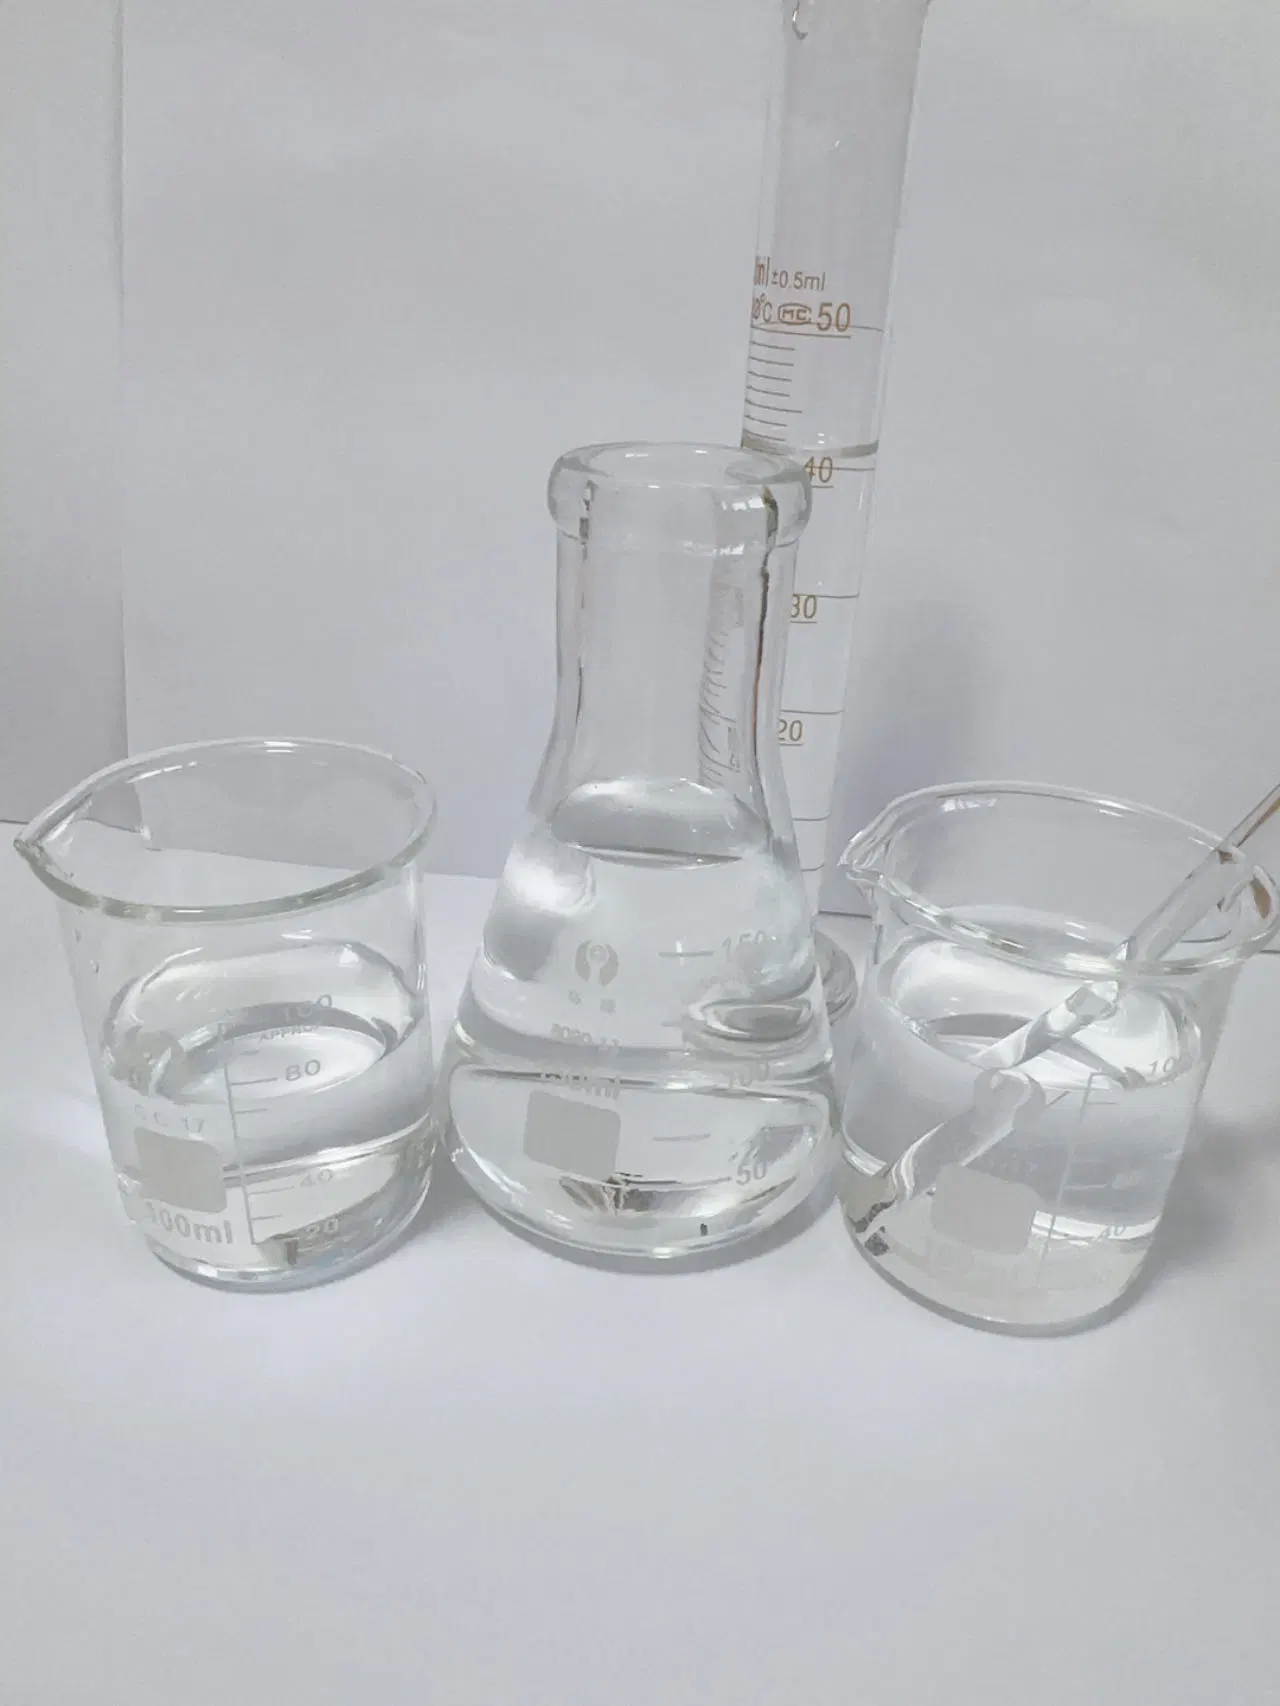 Precios de descuento de suministro Acetoacetato de etilo/ Aceto de etilo CAS 141-97-9